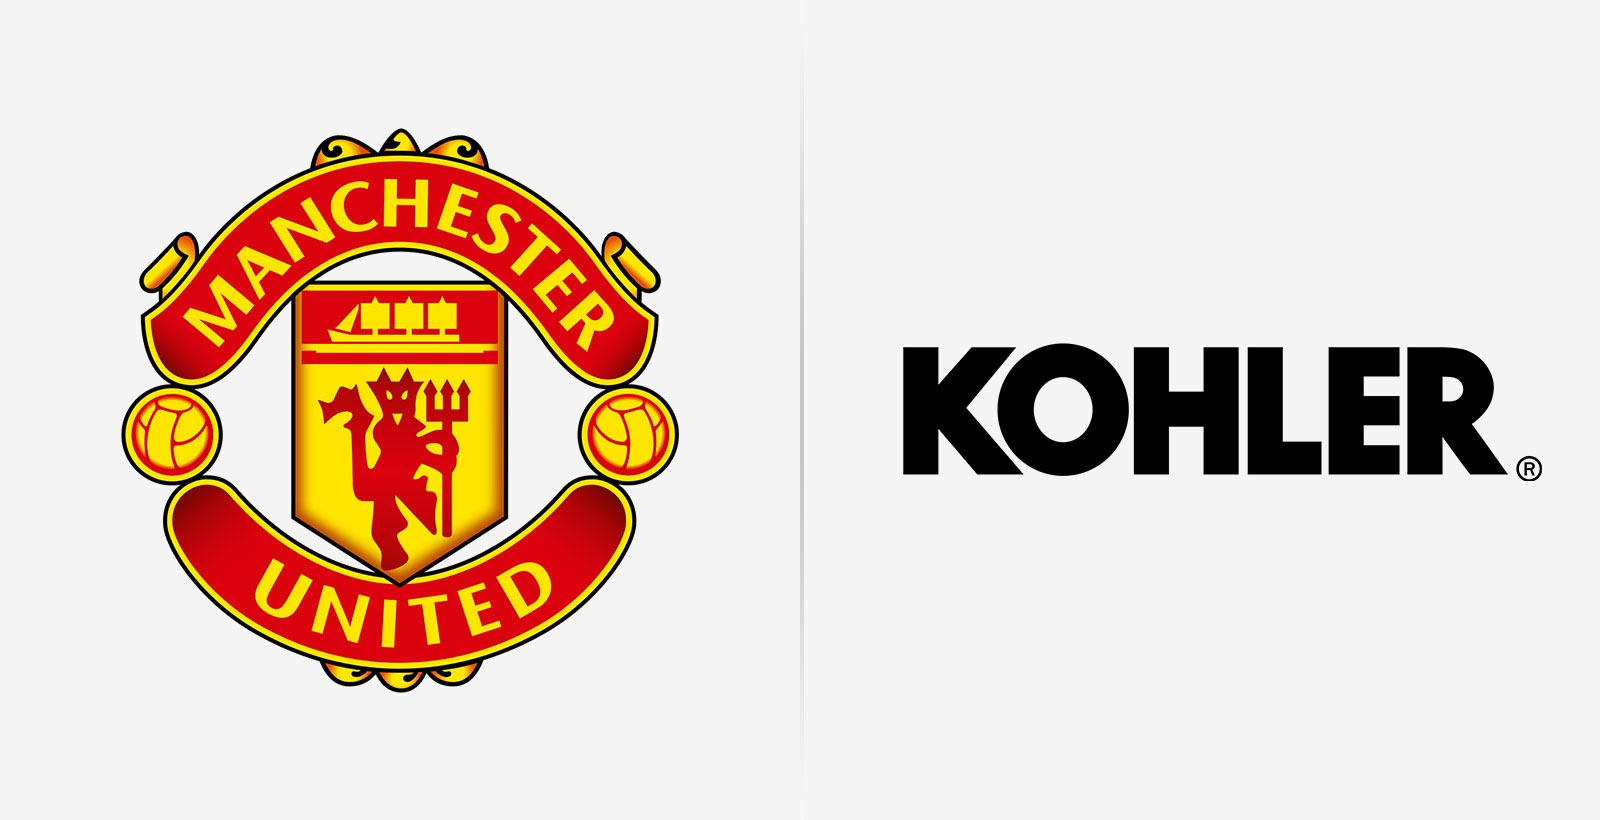 "Манчестер Юнайтед" подпишет контракт с компанией Kohler